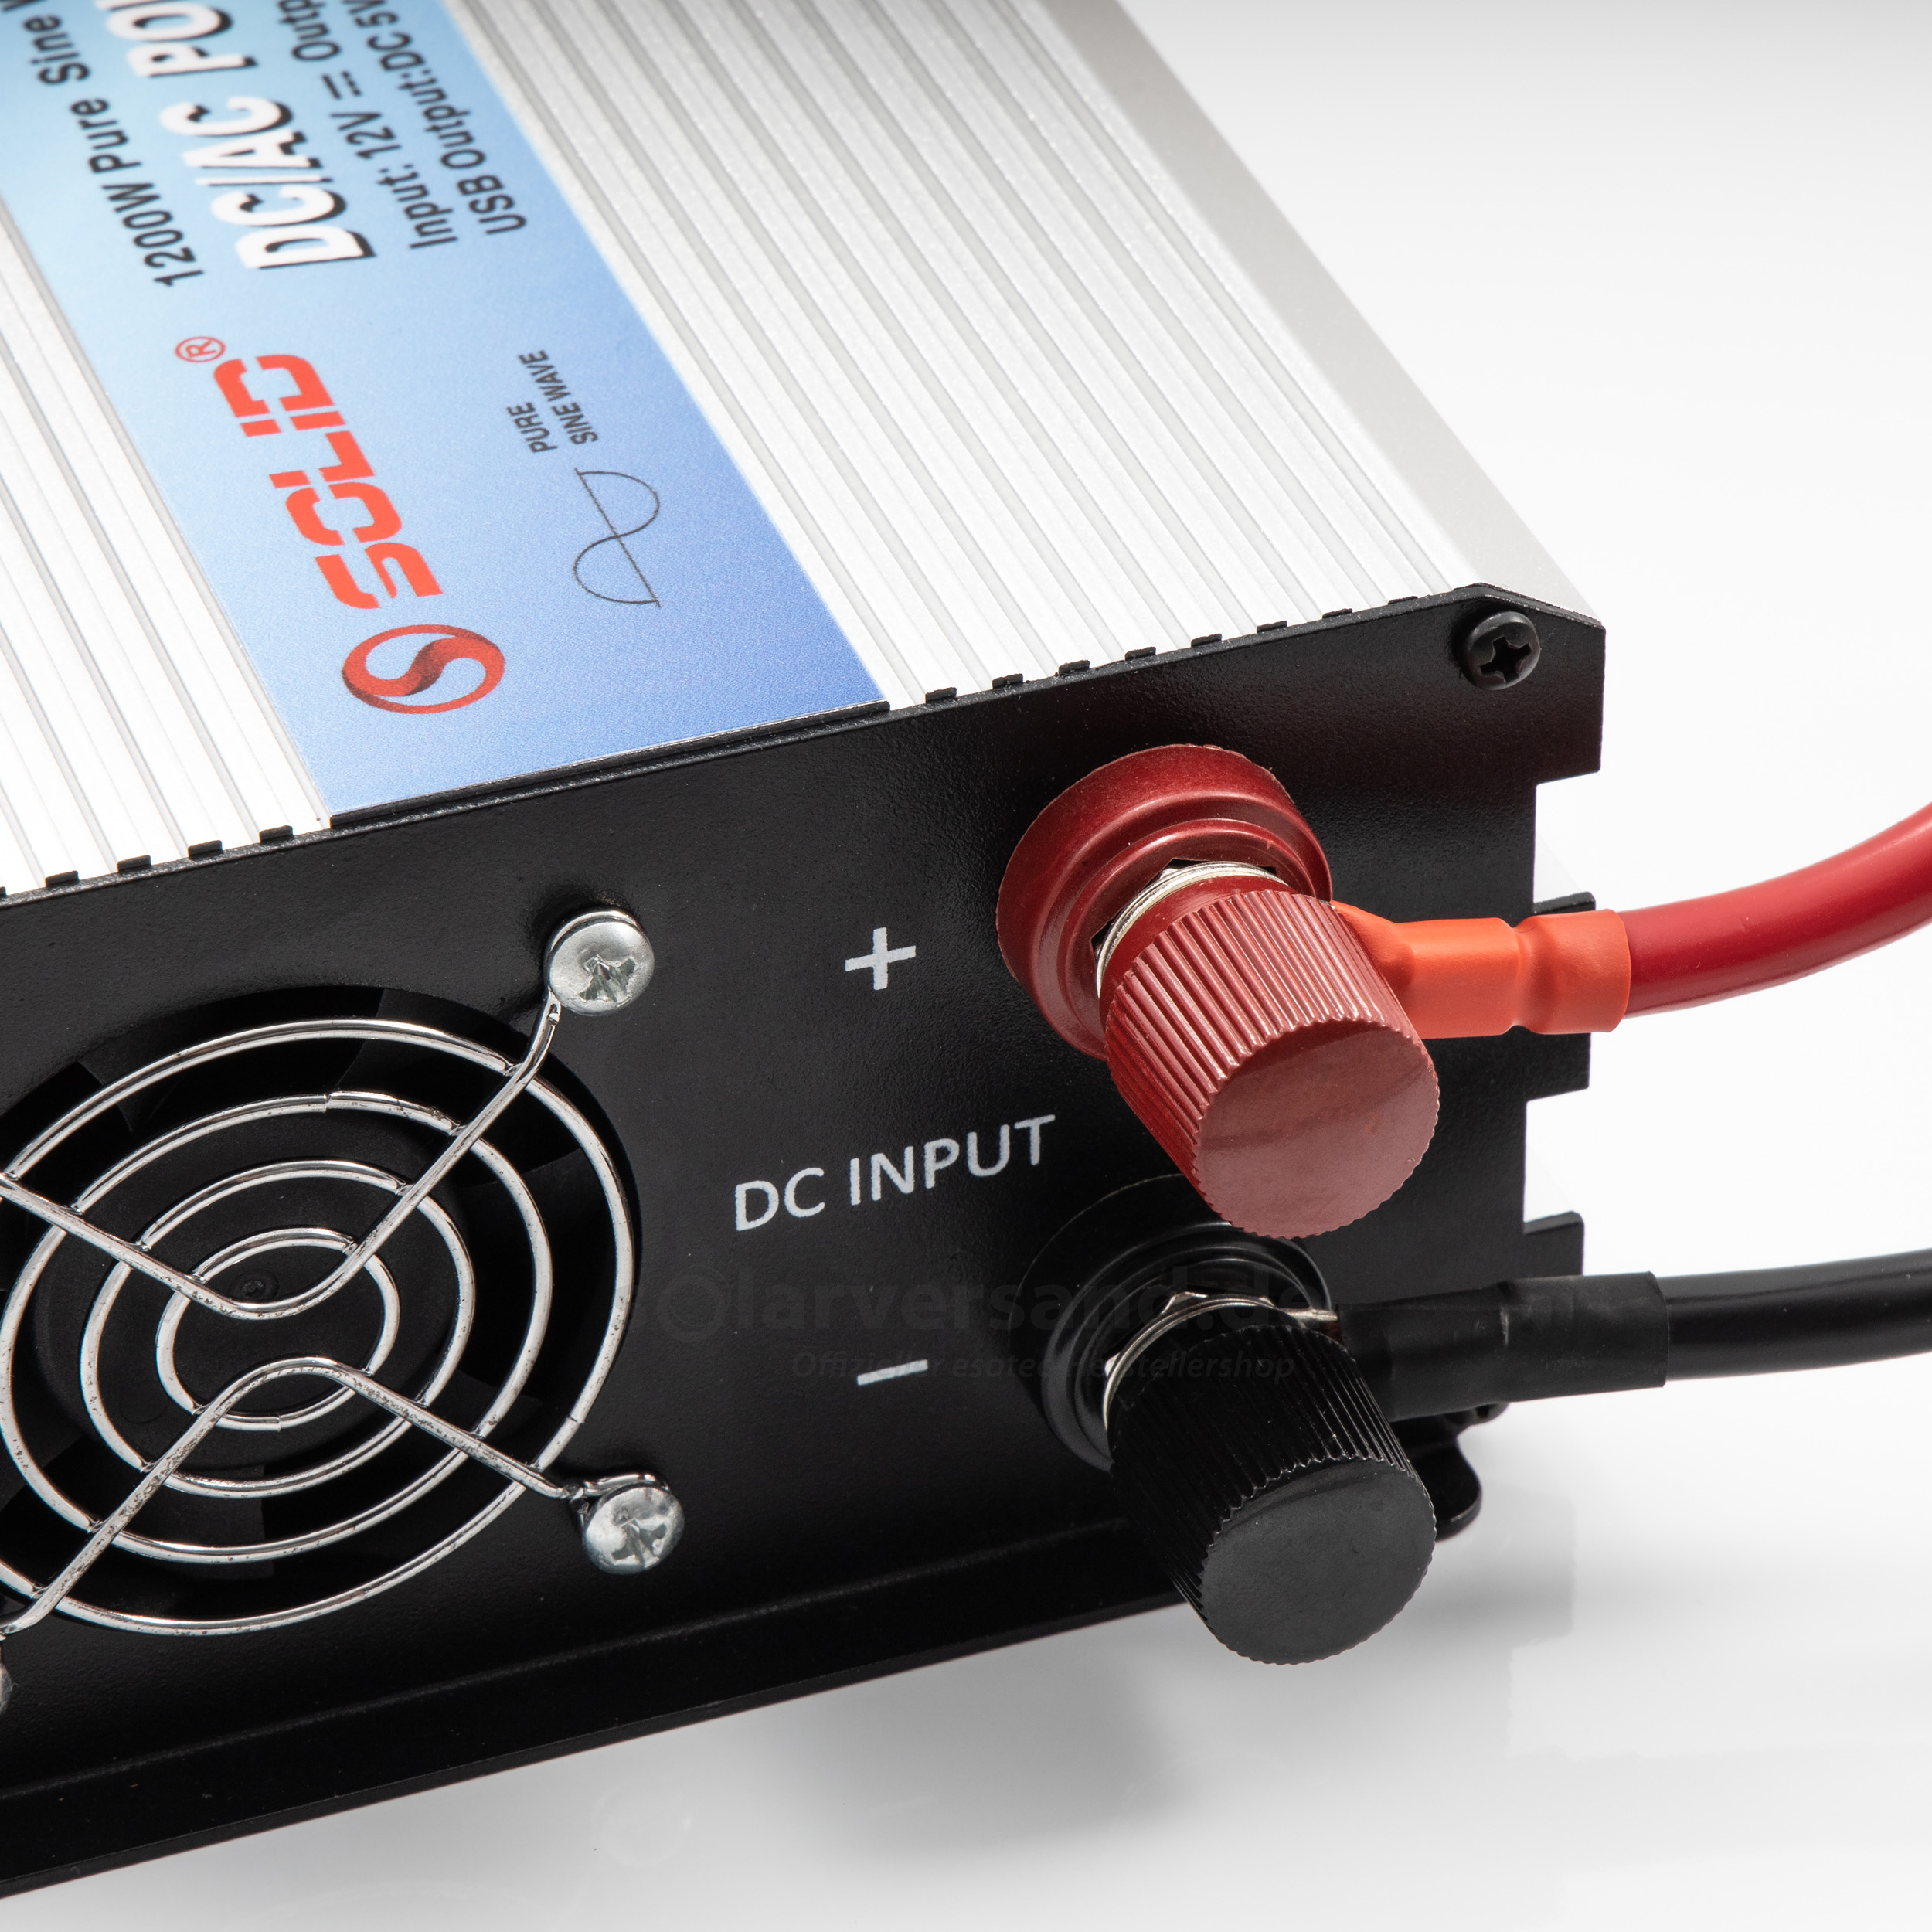 Sinus-Wechselrichter 1200 W mit Netzvorrangschaltung MobilPOWER Inverter  SMI 1200 ST-NVS, Wechselrichter, Strom, PV / Solar